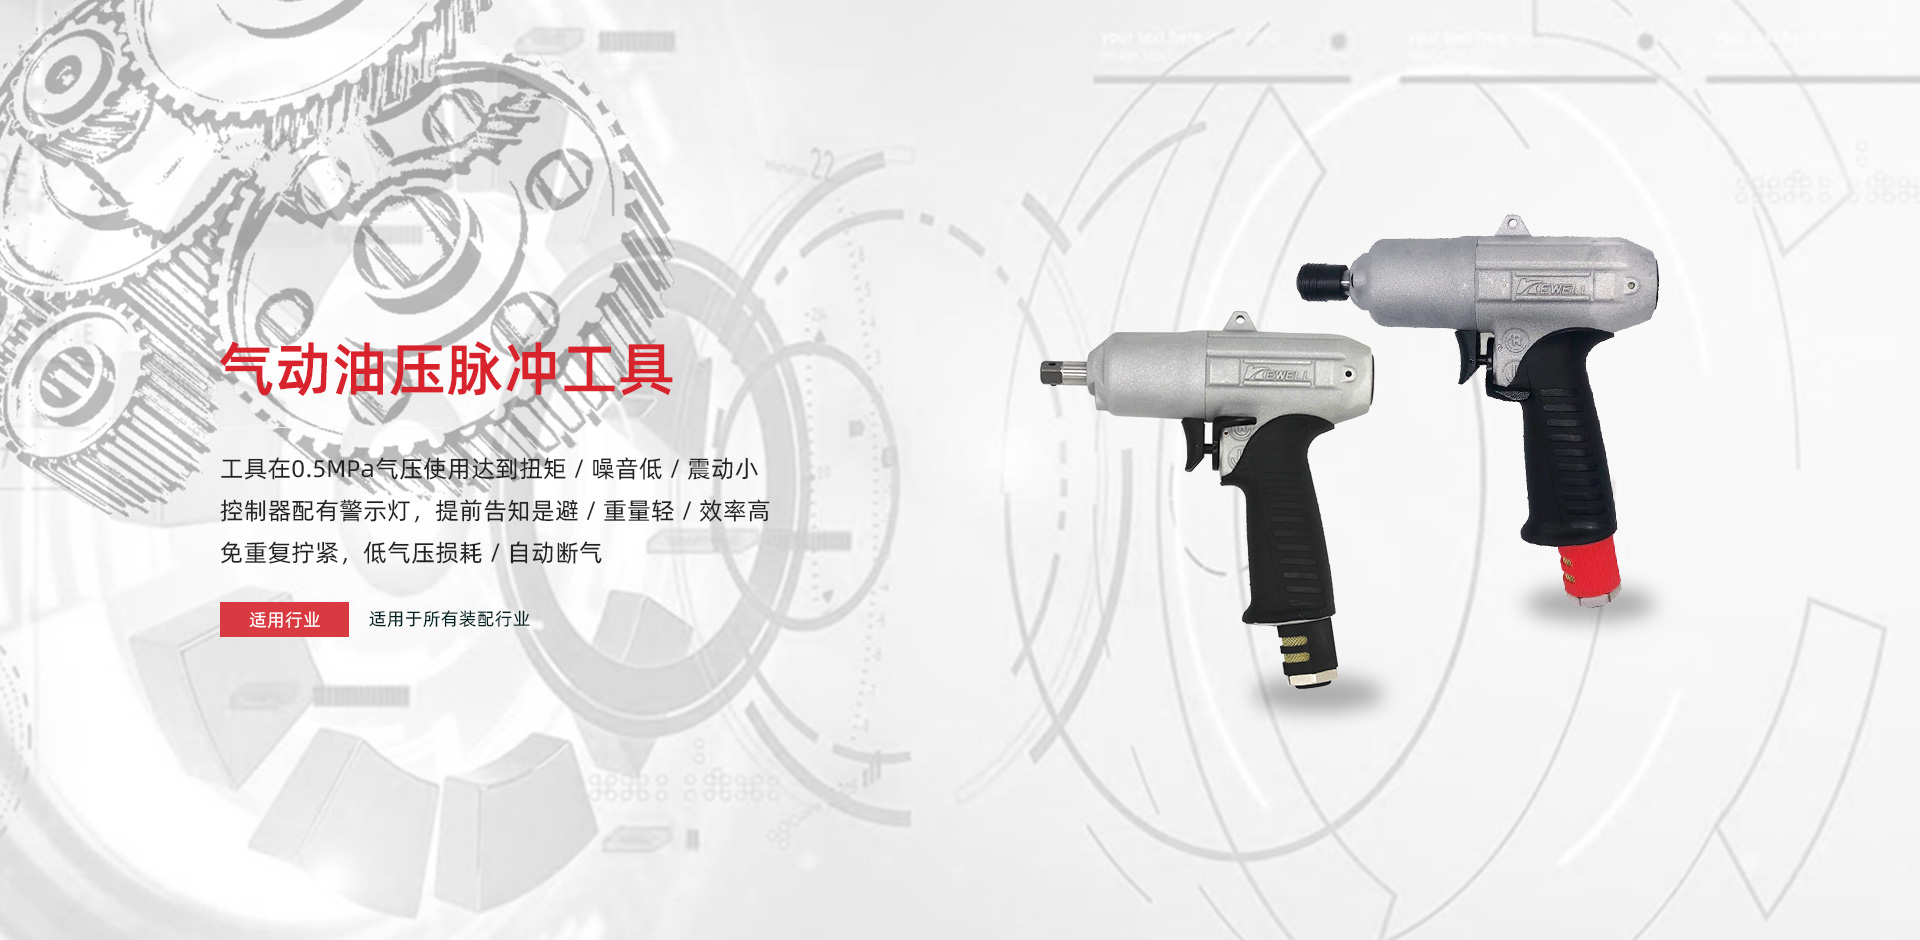 克威邇-風扳機-擰緊機-扭矩扳手-定扭工具-打磨機-五金工具